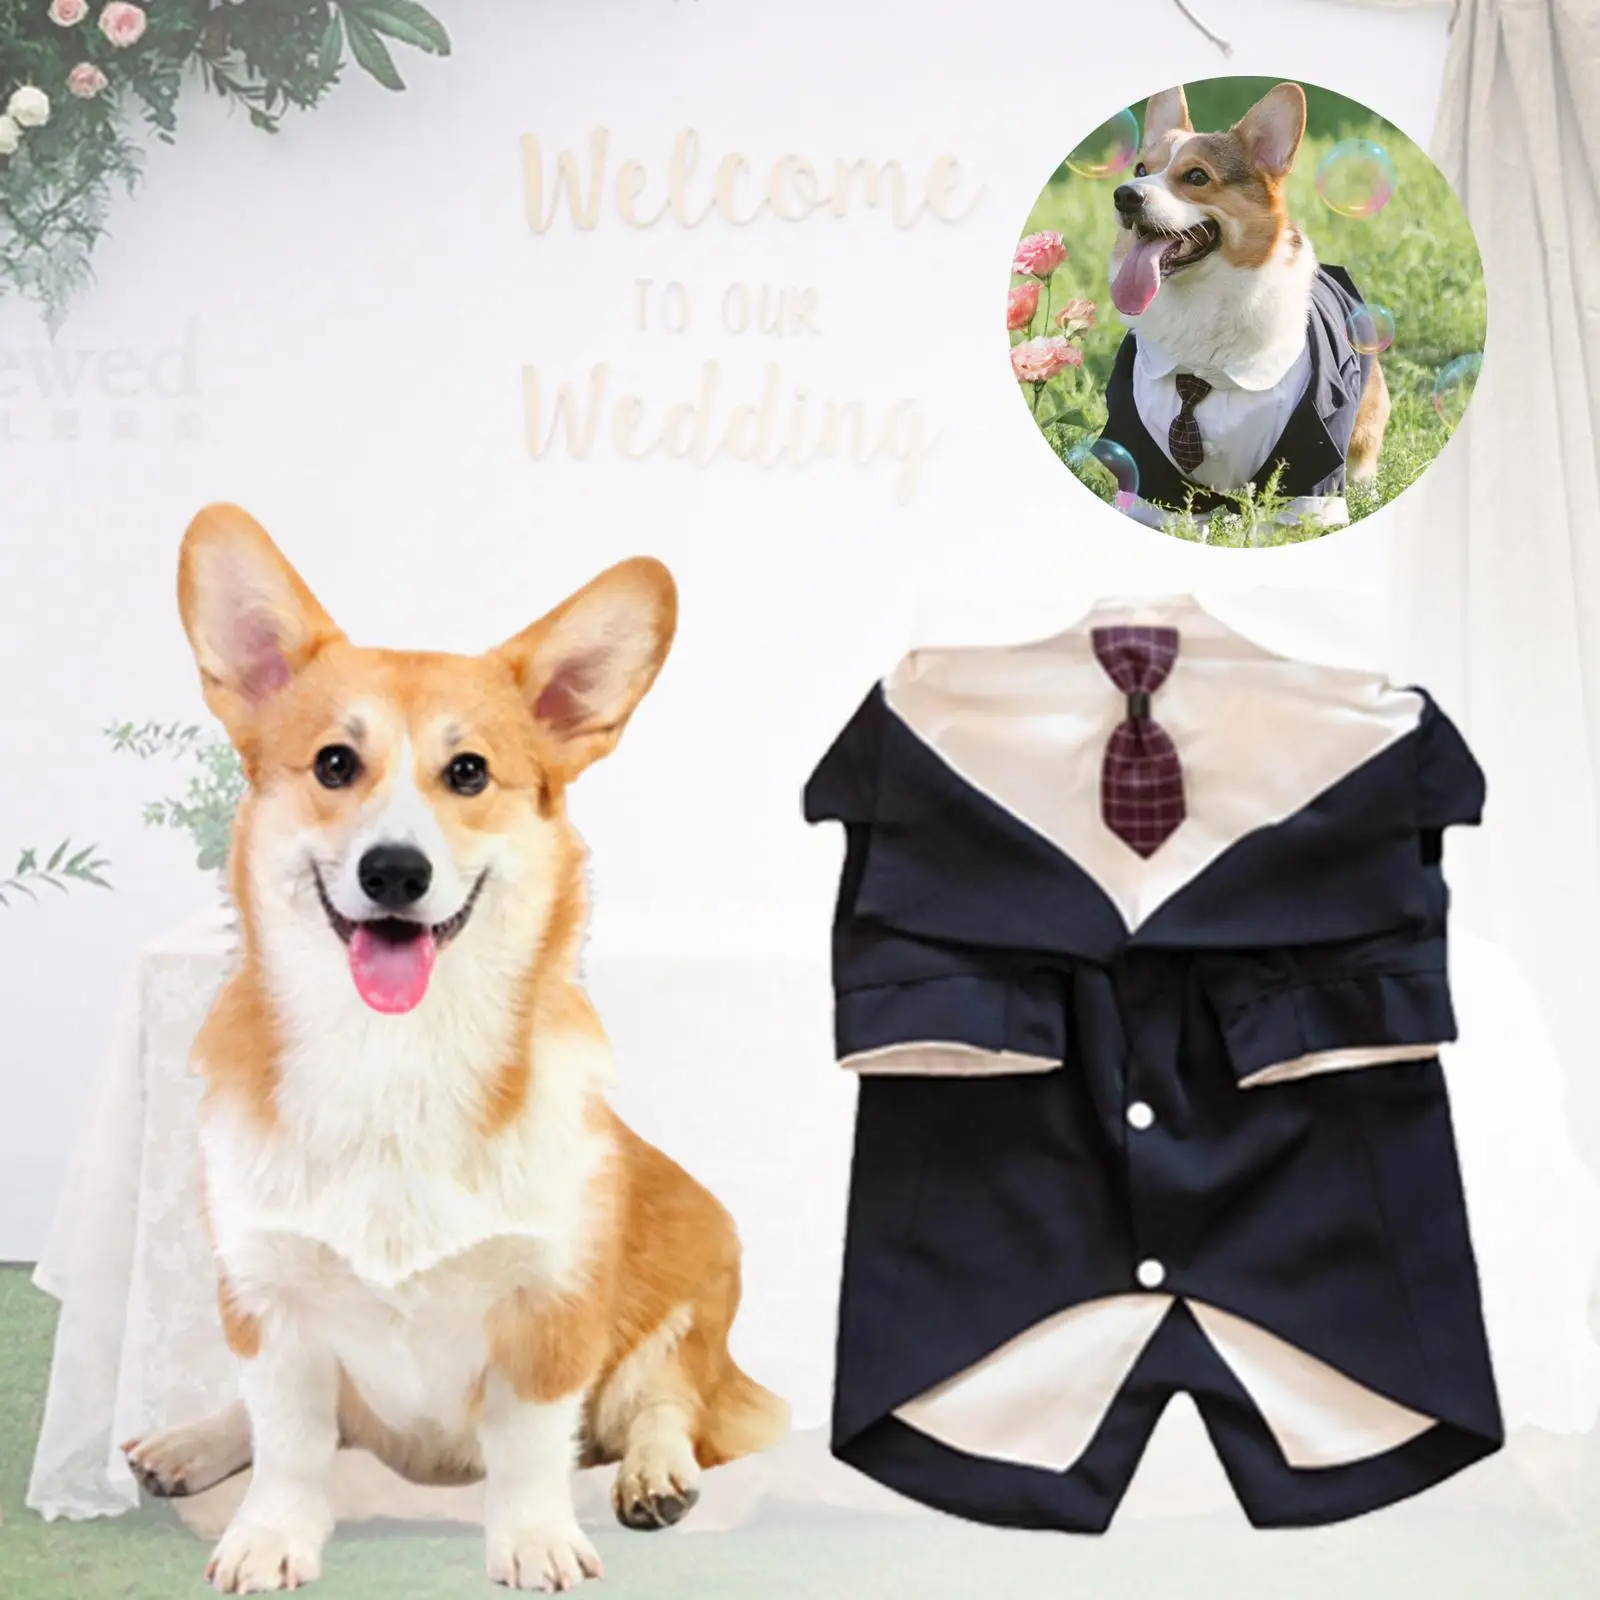 Dog Suit and Bandana Set Bow Tie Shirt Dog Wedding Party Suit Elegant Dog Tuxedo for Halloween Wedding Cosplay Birthday